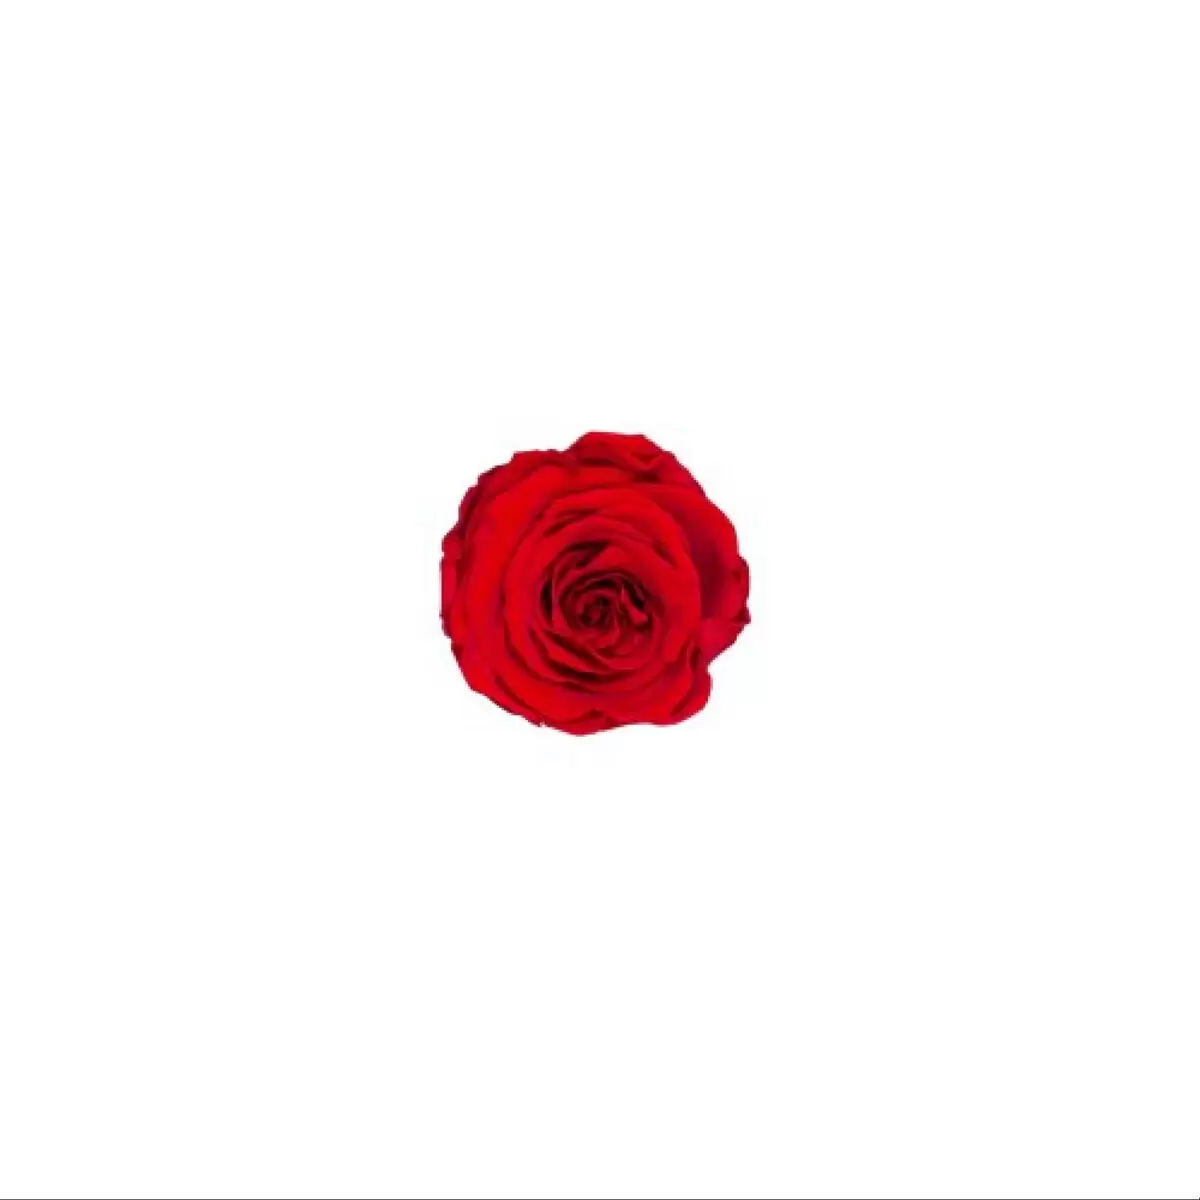 Rosa Stabilizzata Rossa in Box Personalizzato